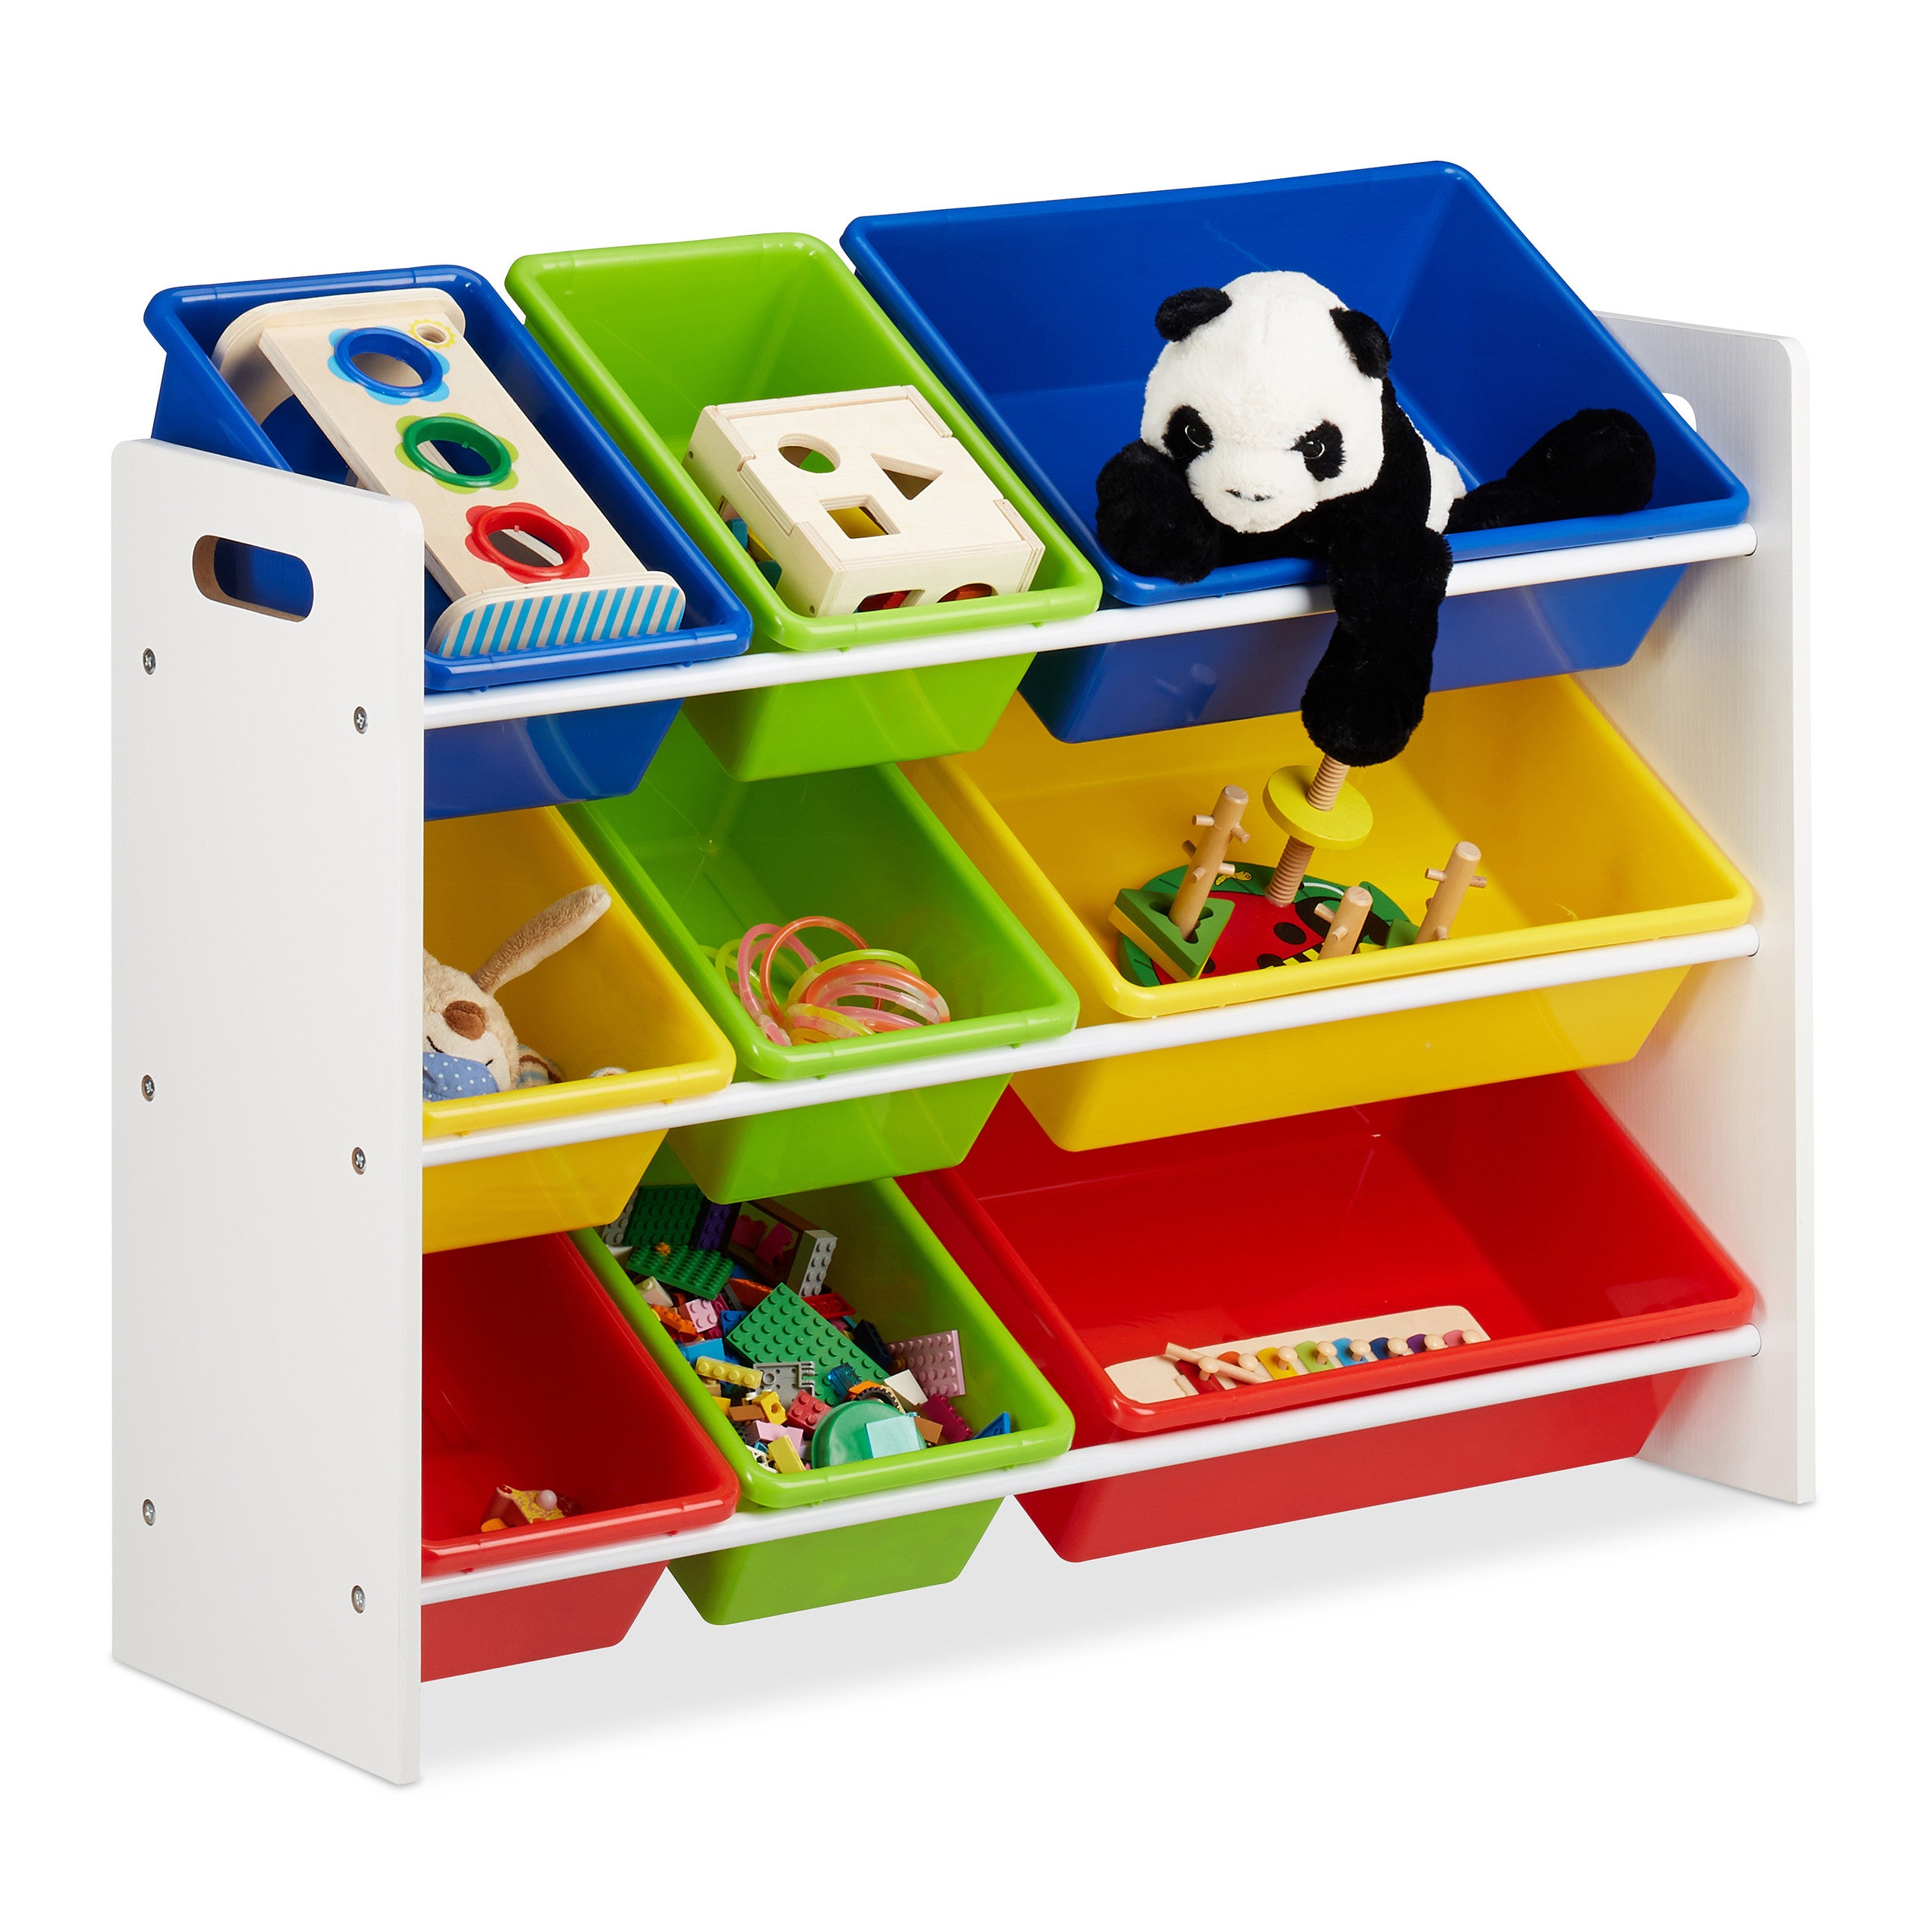 65 x 28 x 60 cm organizer per giocattoli per bambini a 3 livelli GOTOTOP Scaffale in legno con 6 scatole per bambini 